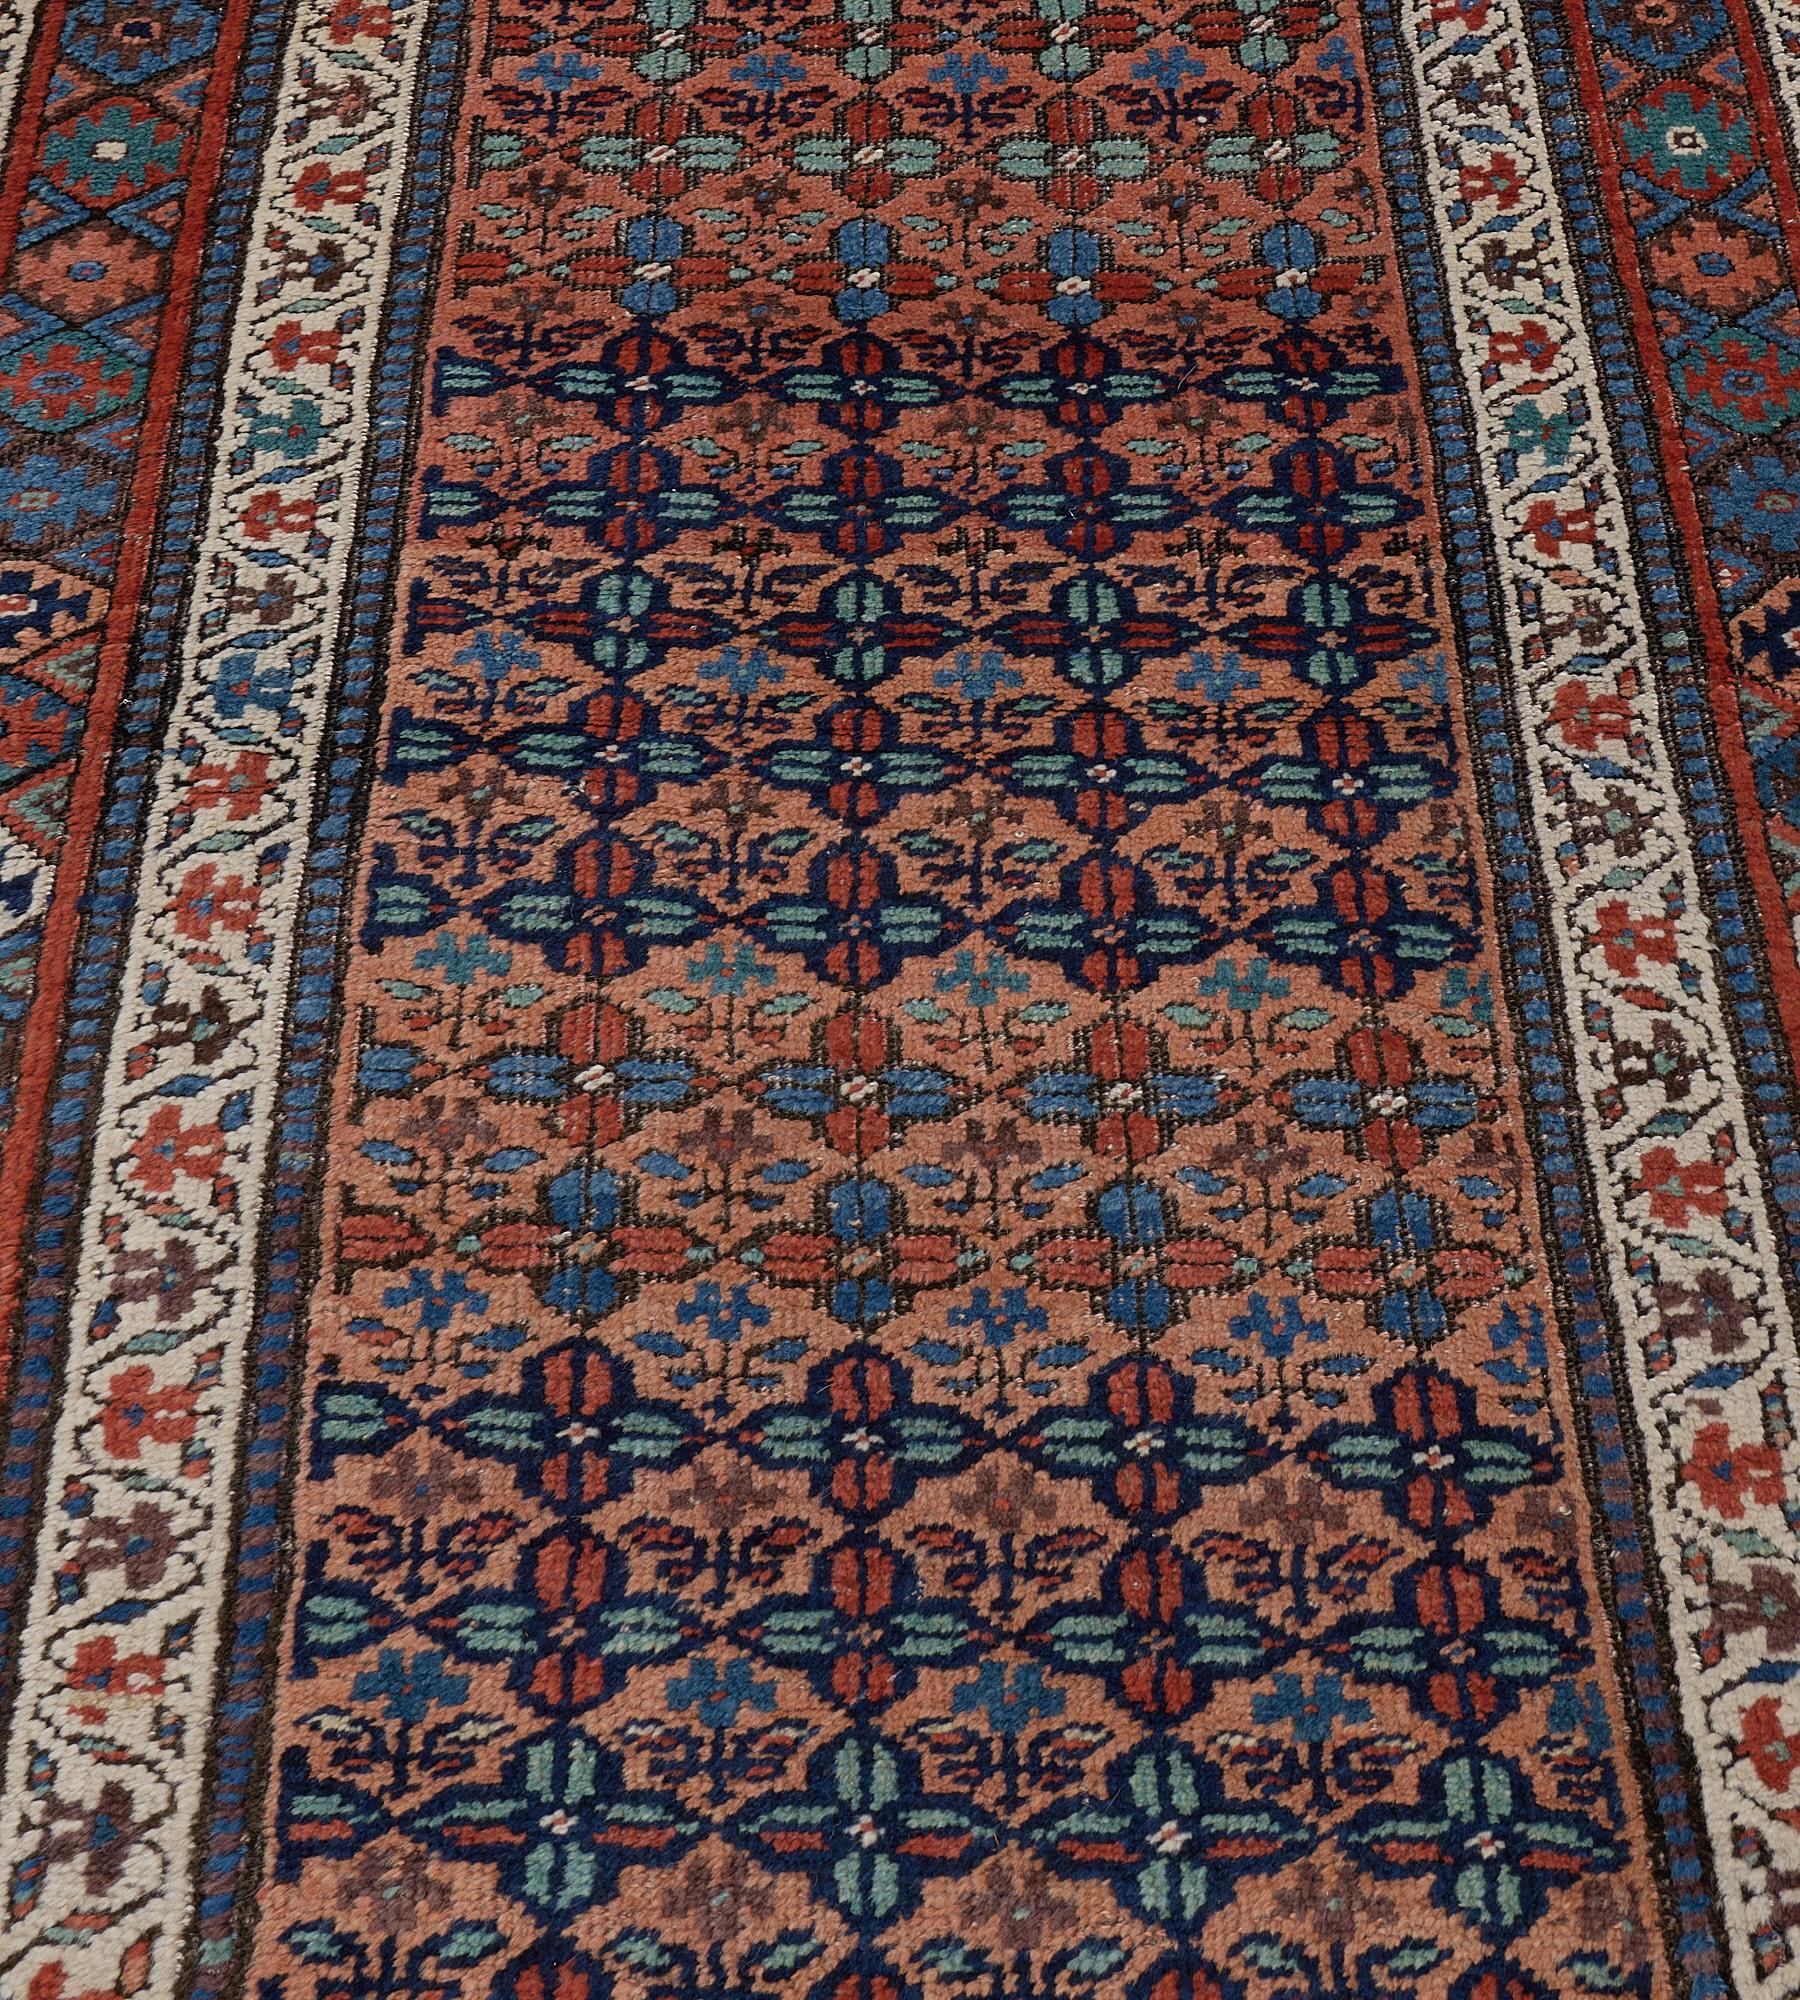 Ce tapis kurde ancien présente un champ en terre cuite pâle avec des rangées diagonales de têtes de fleurs bleu clair et brun renard formant un treillis enfermant une délicate tige fleurie, dans une bordure de losanges polychromes reliés entre de